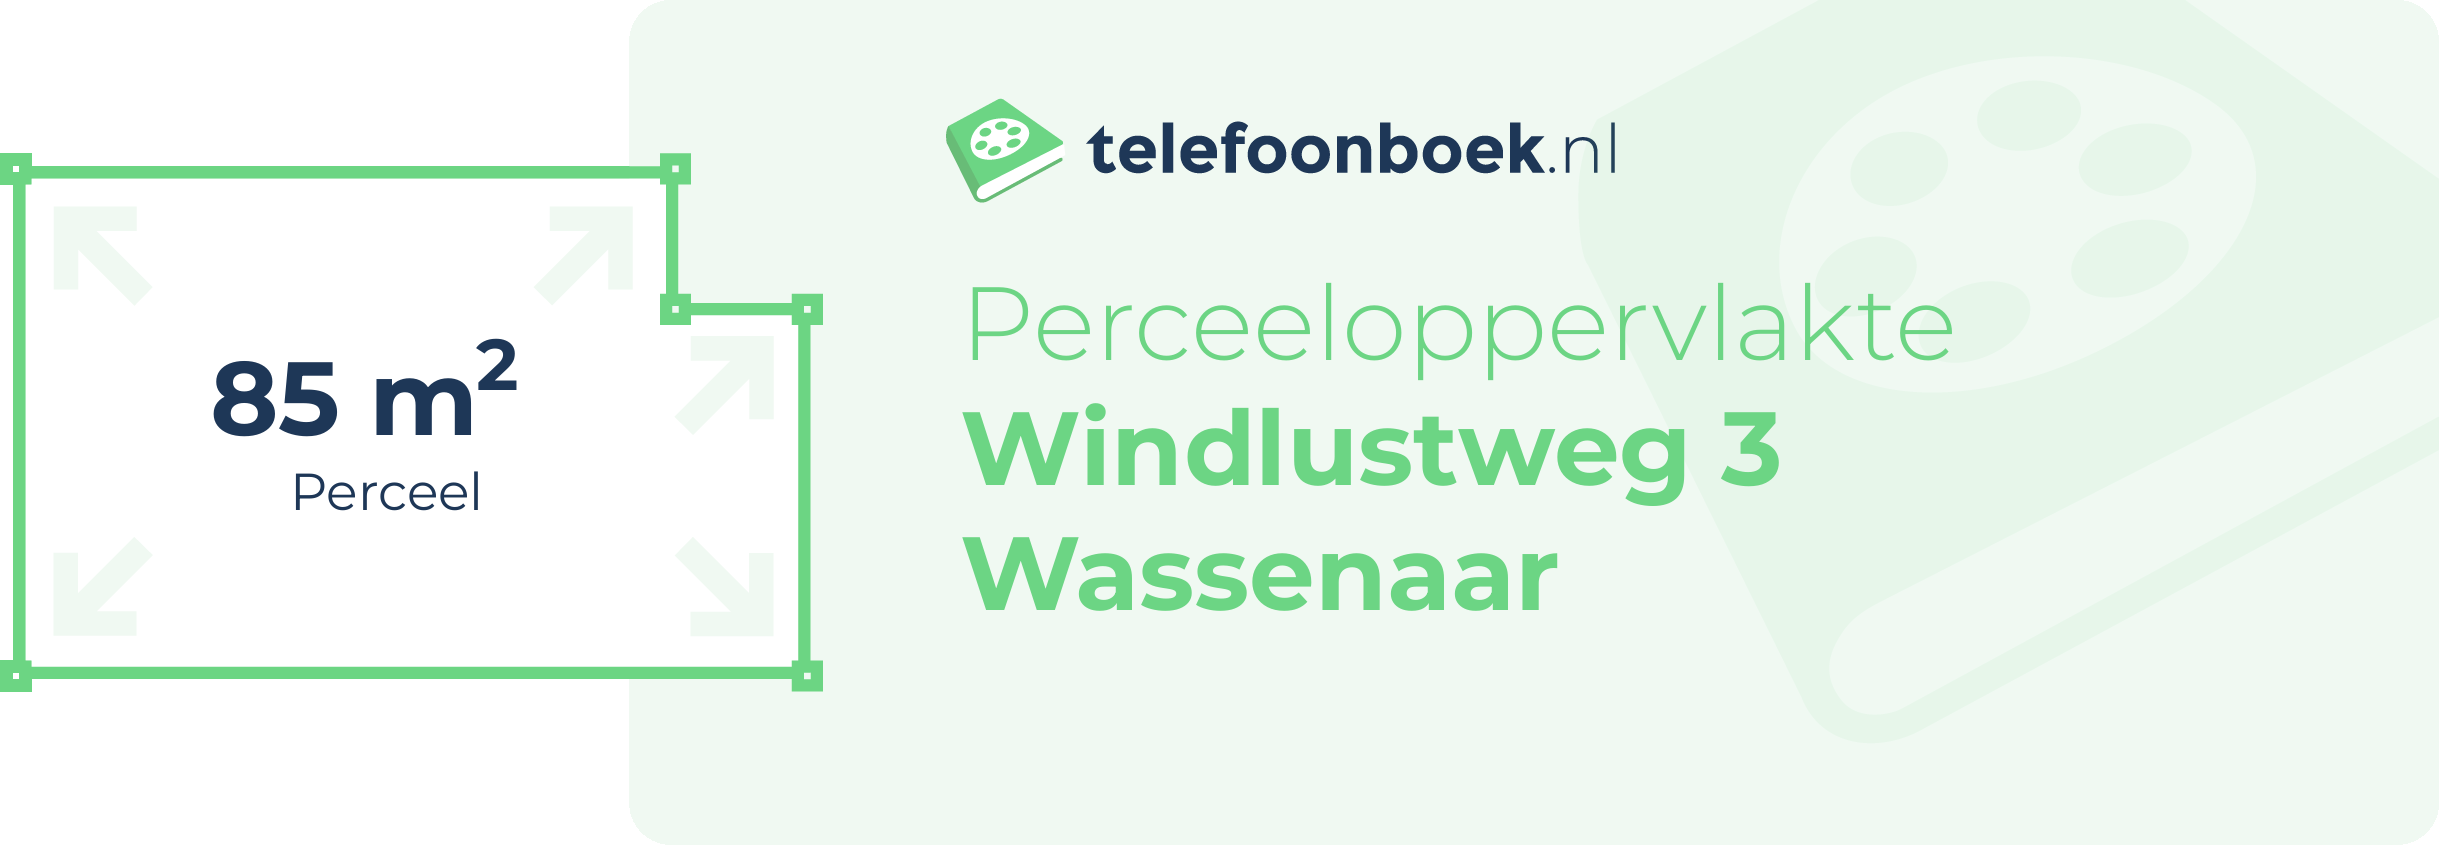 Perceeloppervlakte Windlustweg 3 Wassenaar